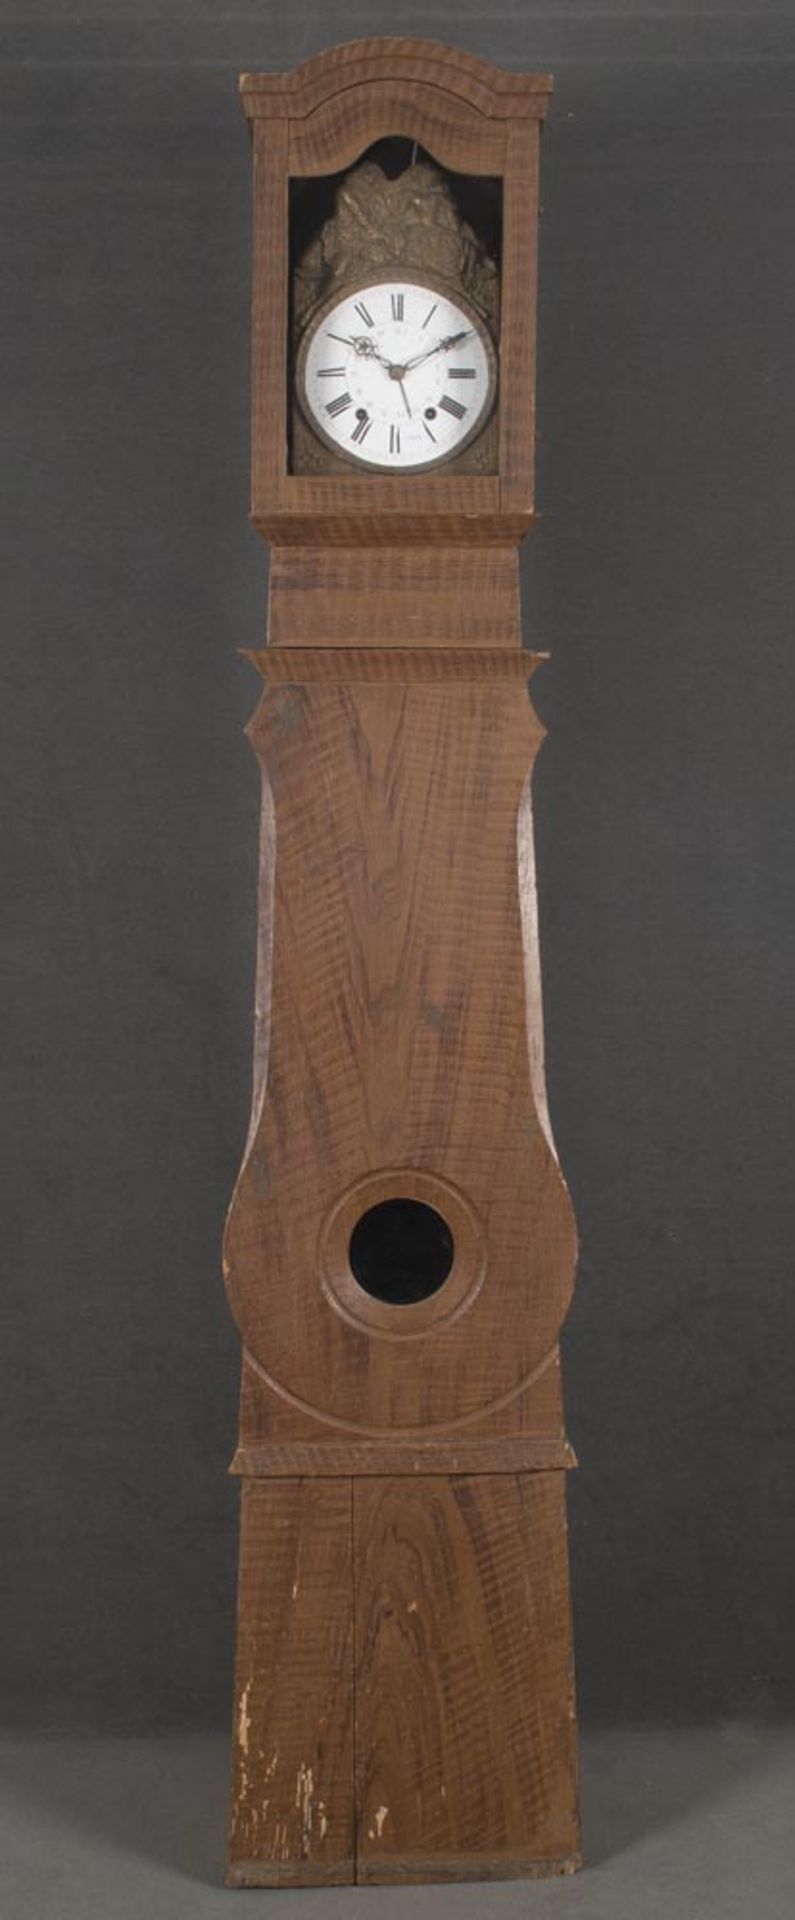 Standuhr. Frankreich 19. Jh. Weichholz, bemalt mit Holzmaserdekor, Emailleziffernblatt, umgeben